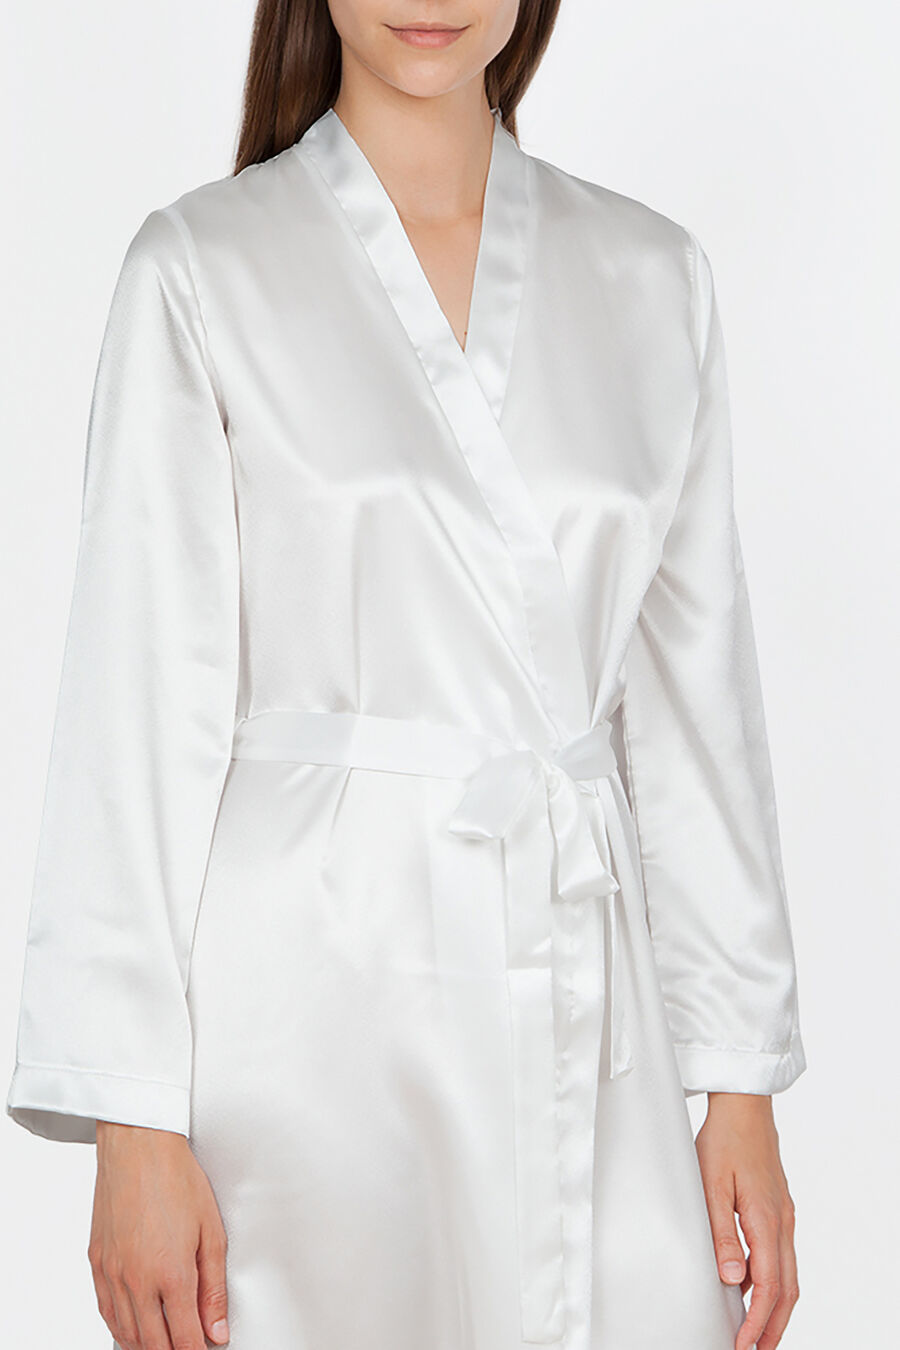 Image of Ivette Bridal Ivette Bridal women's short white satin robe